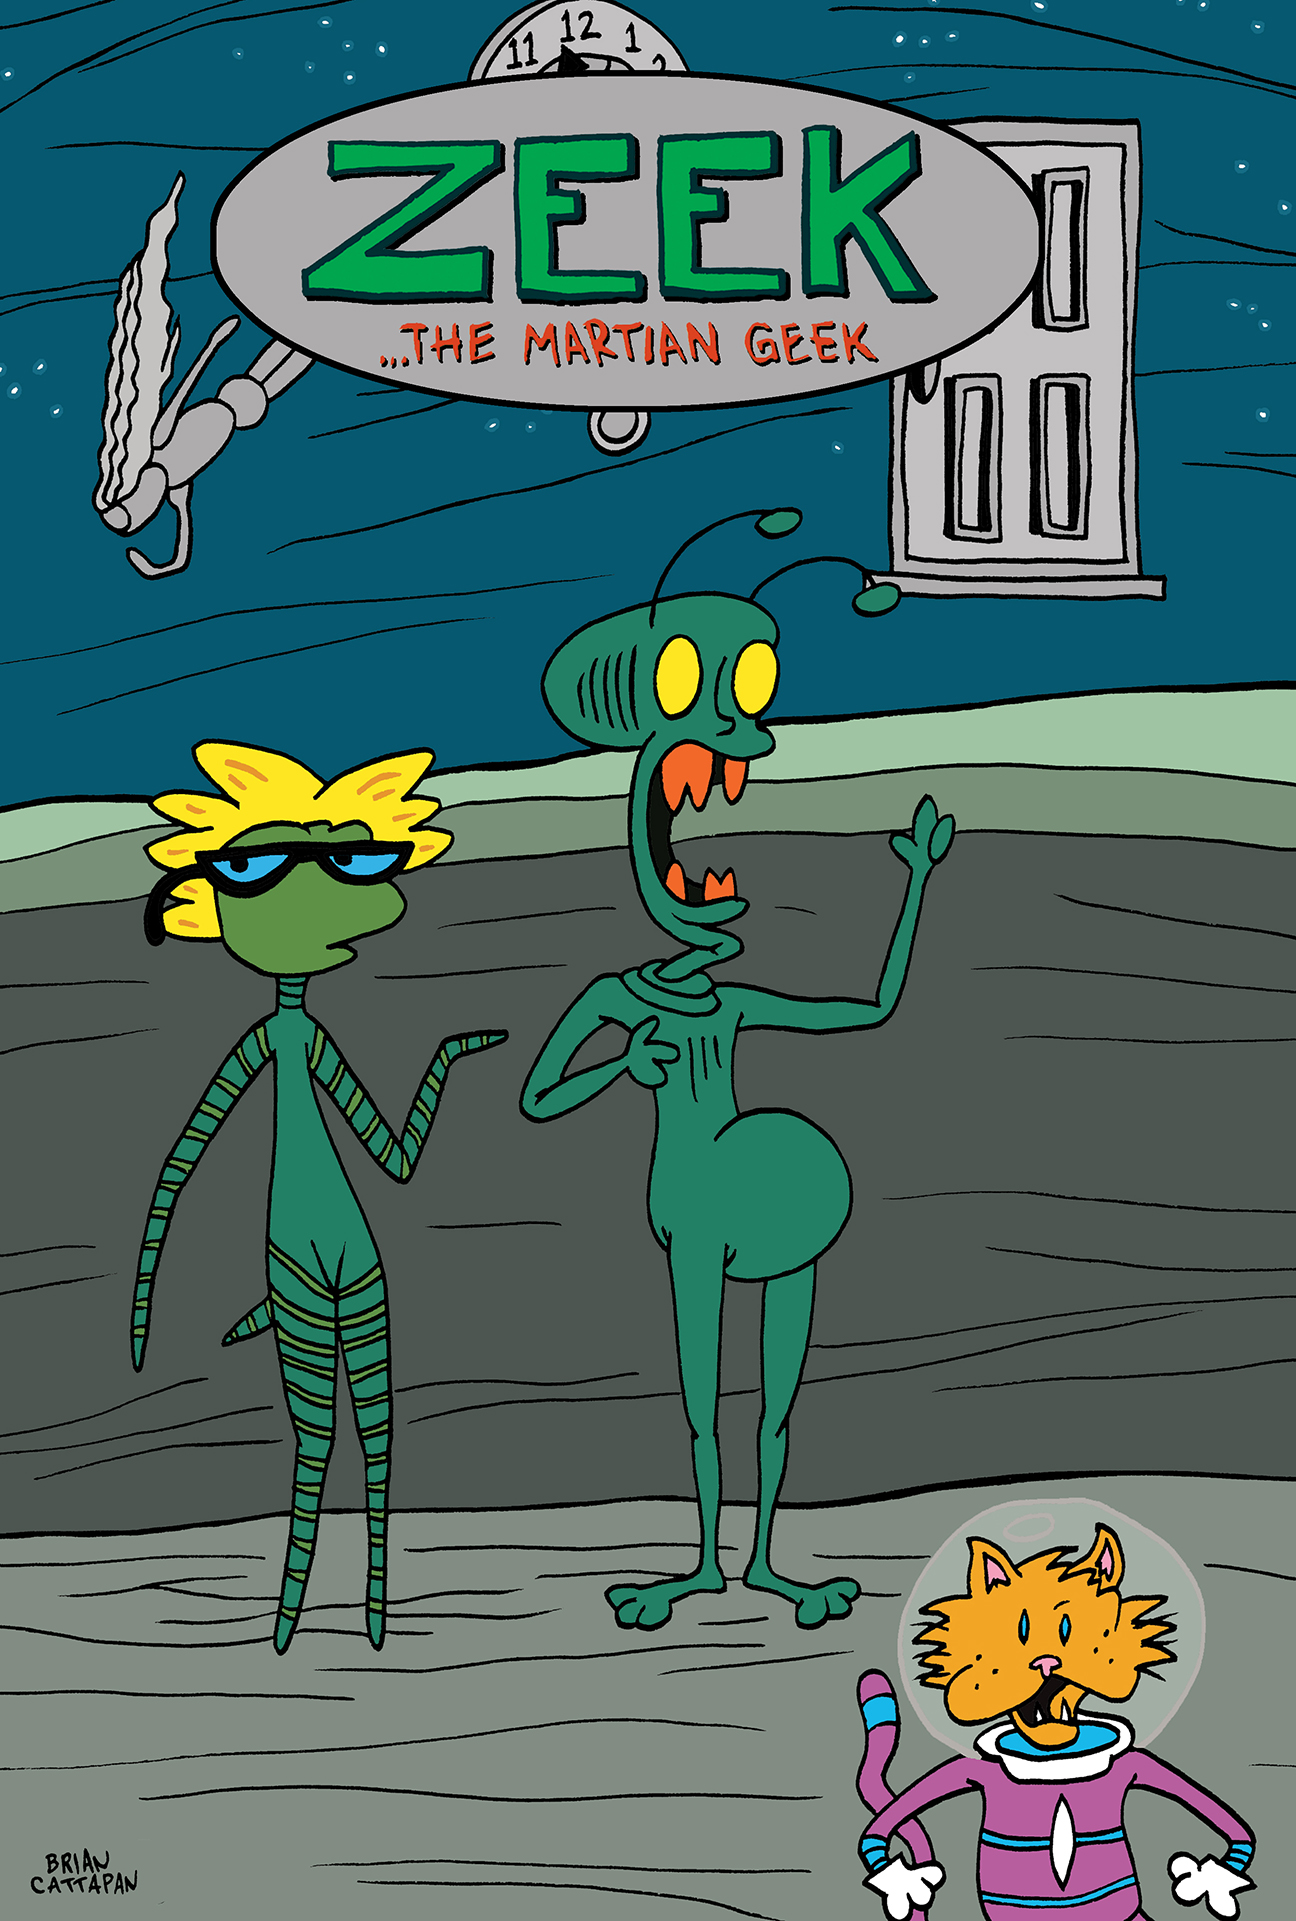 ZEEK the Martian Geek